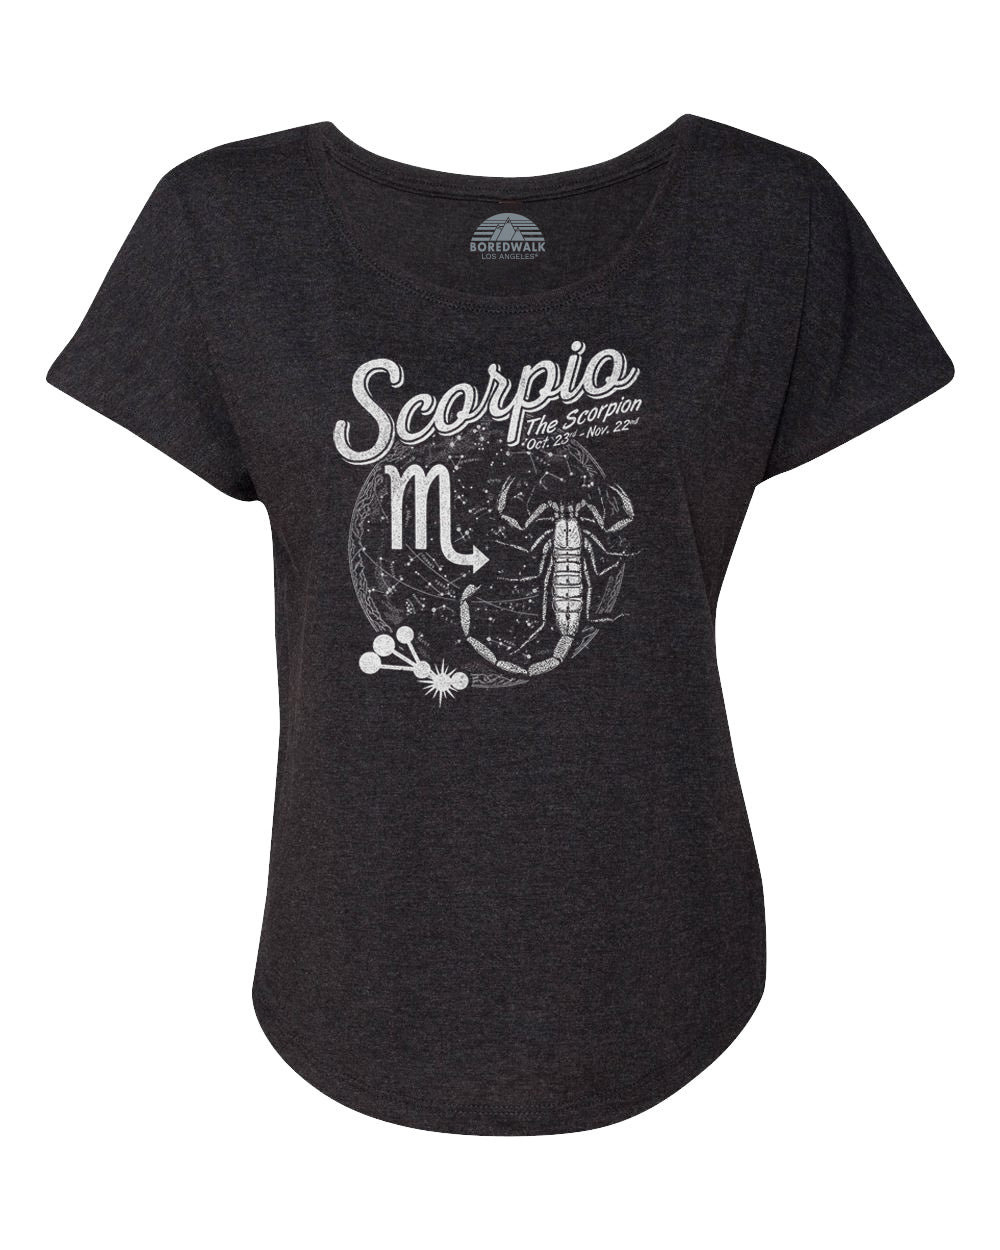 Women's Vintage Scorpio Scoop Neck T-Shirt